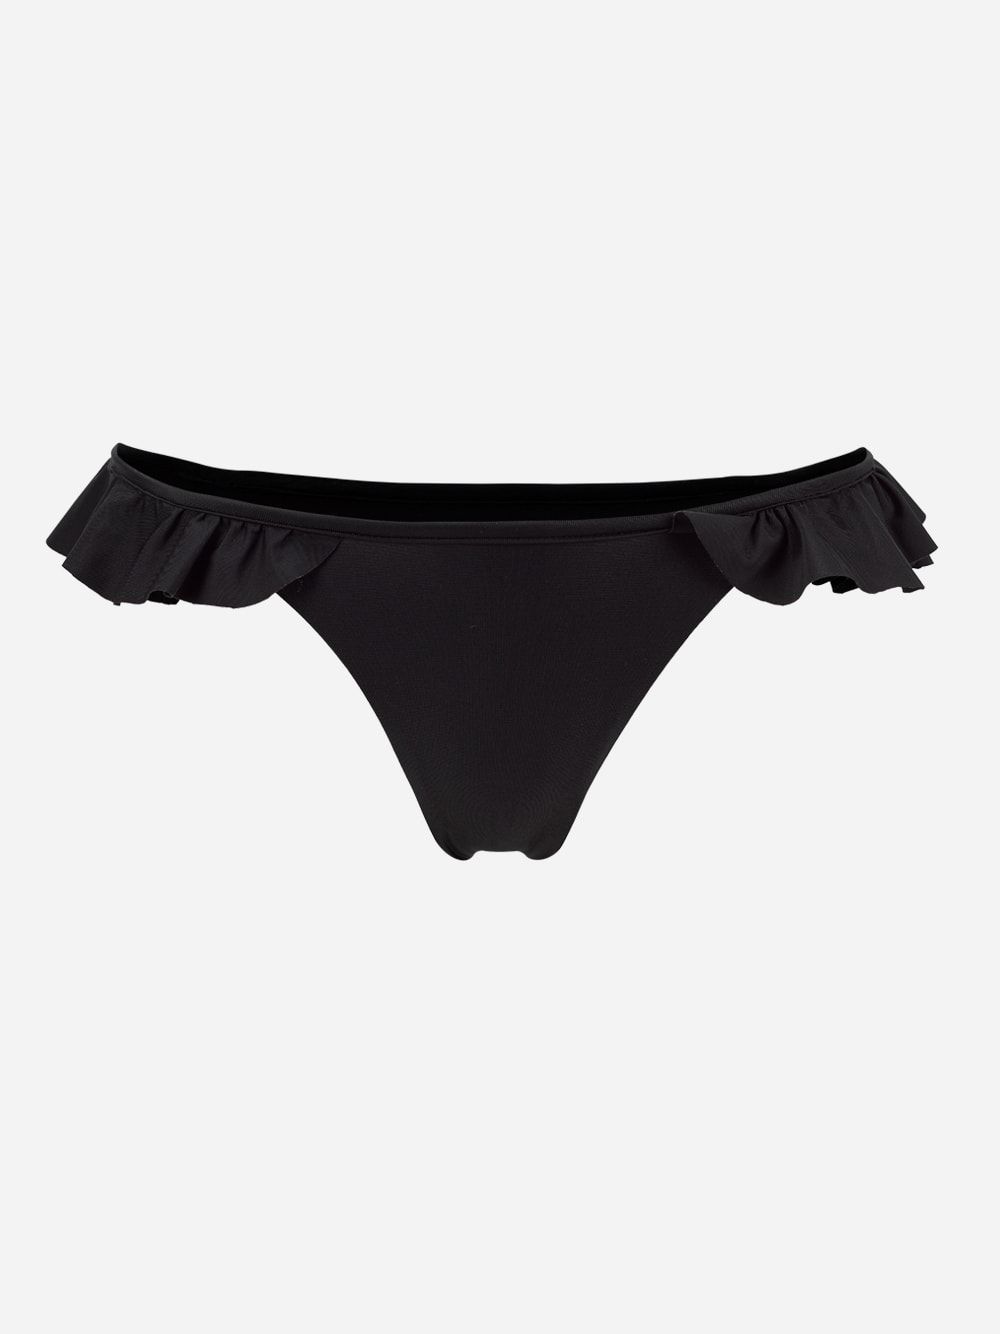 Nara Black Bikini Bottom | Fabiana Baumann